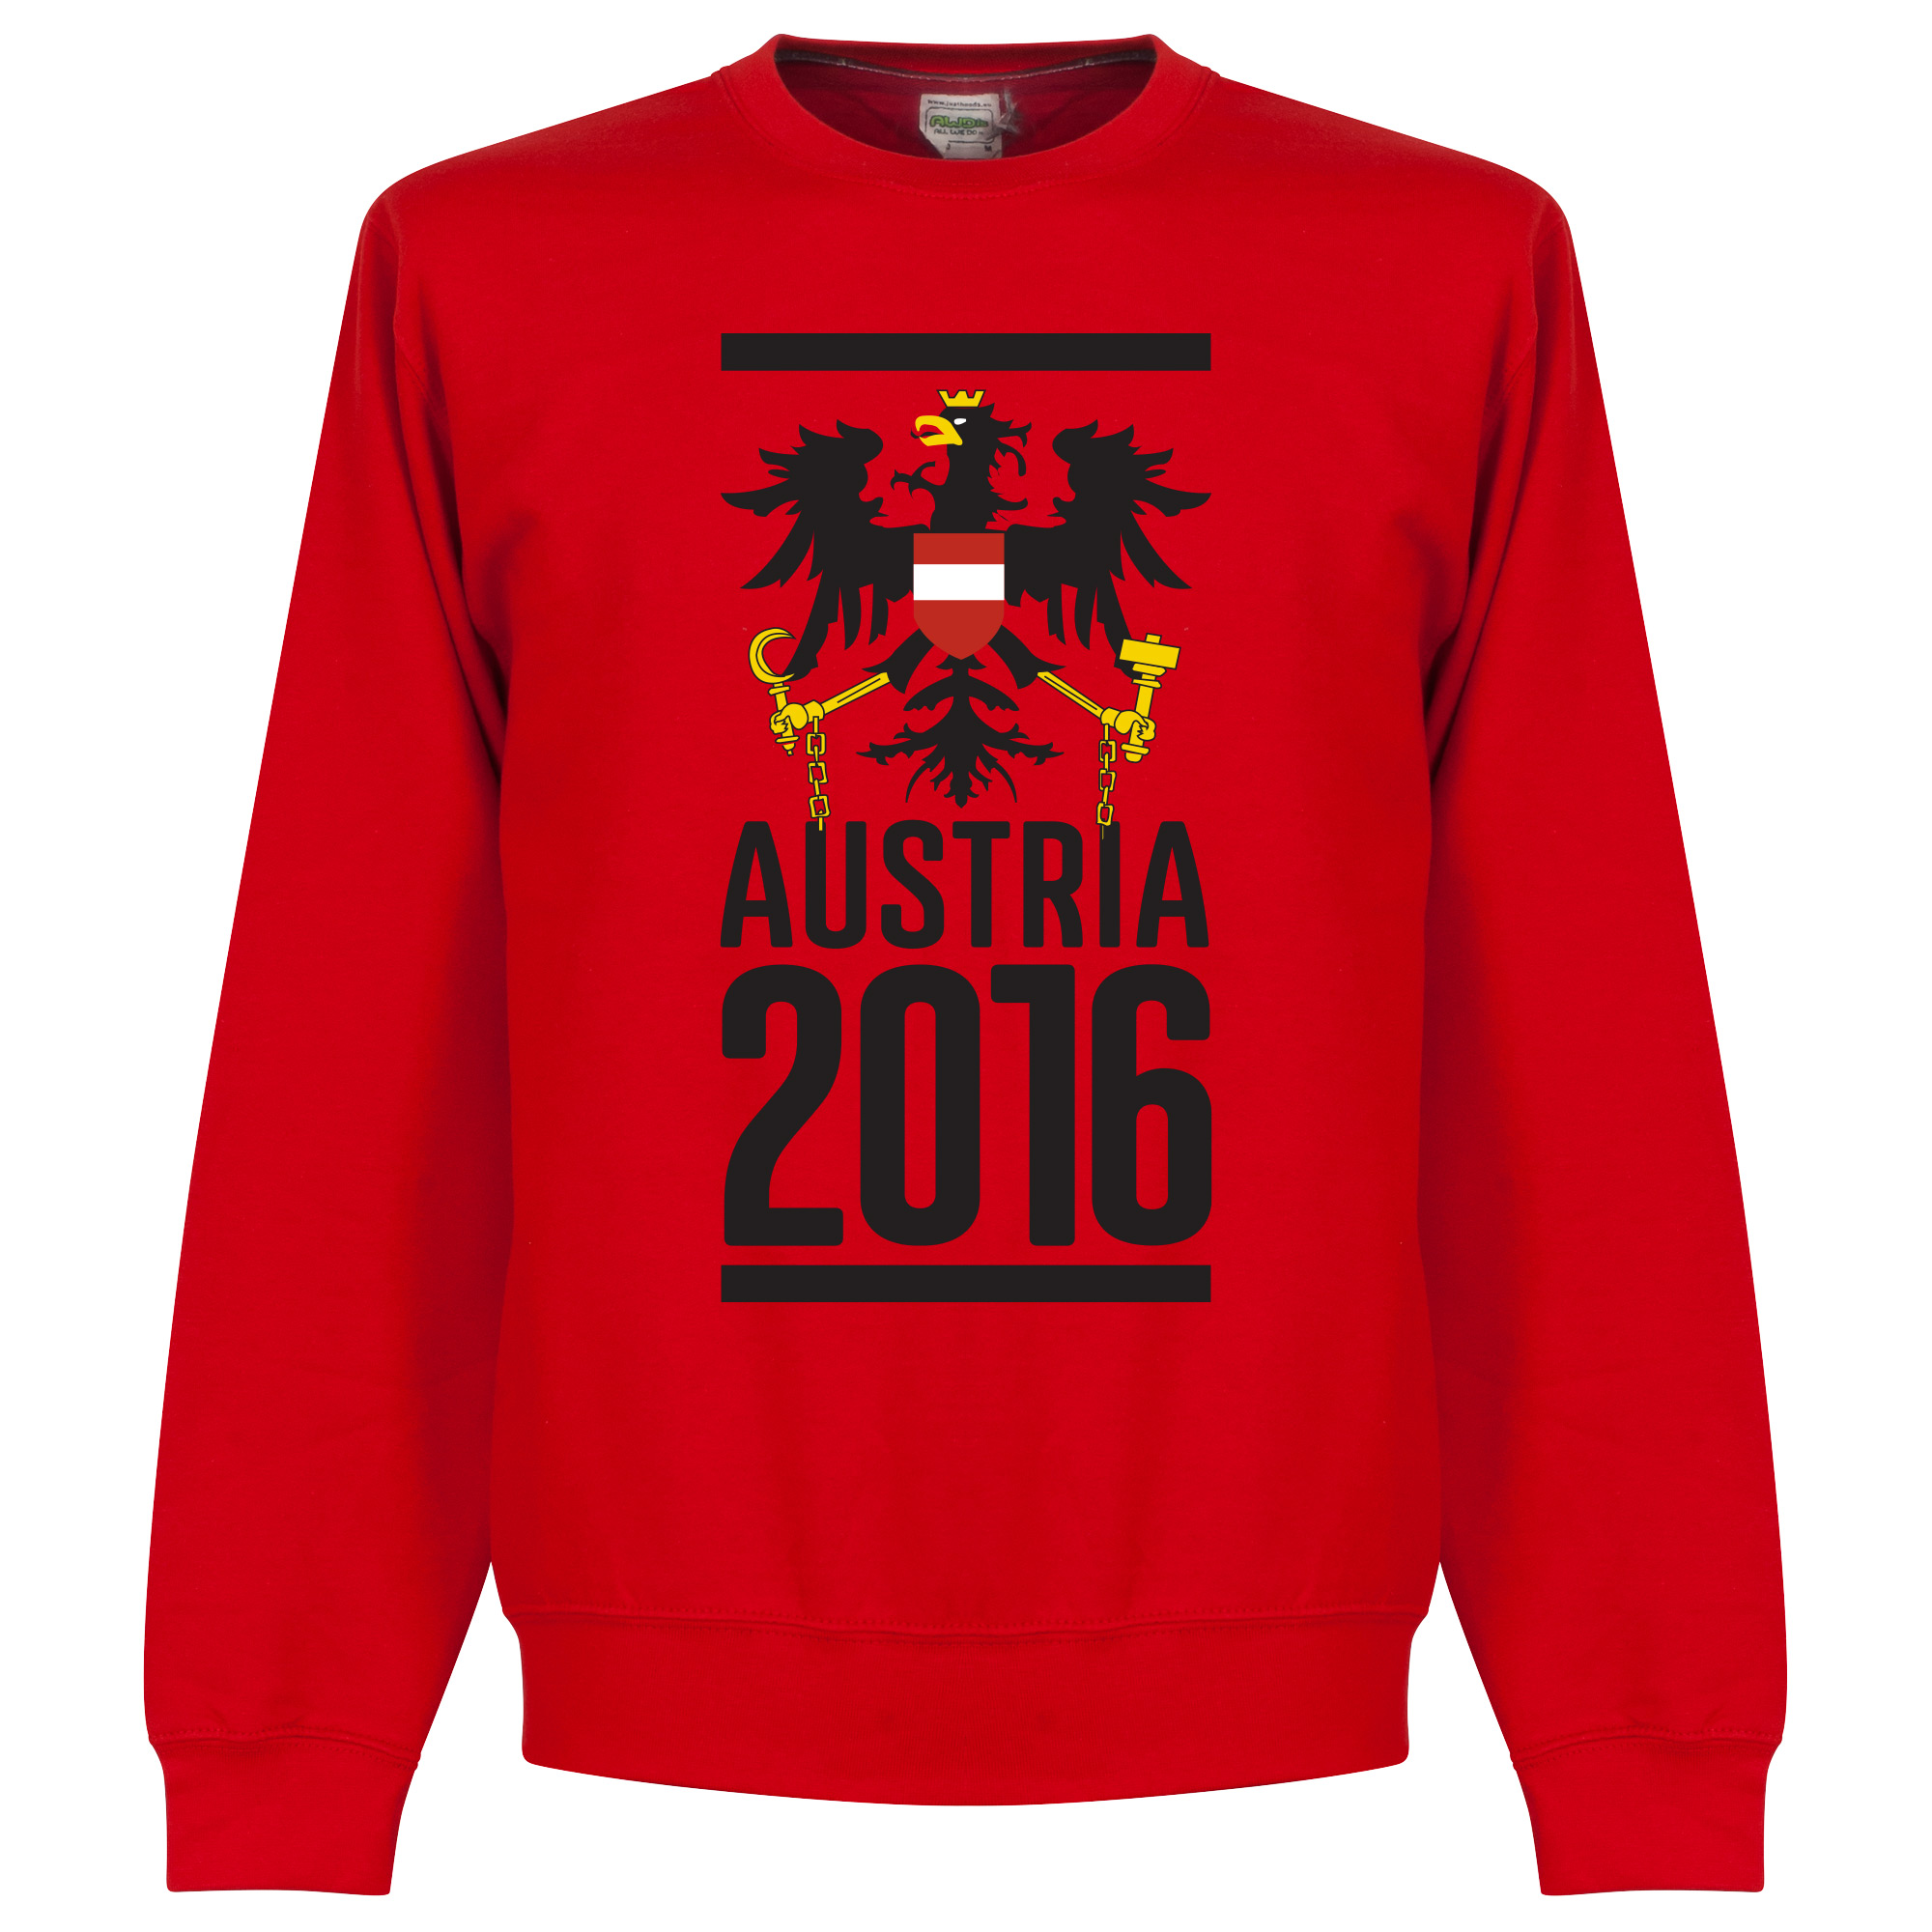 Oostenrijk 2016 Crew Neck Sweater - XXL